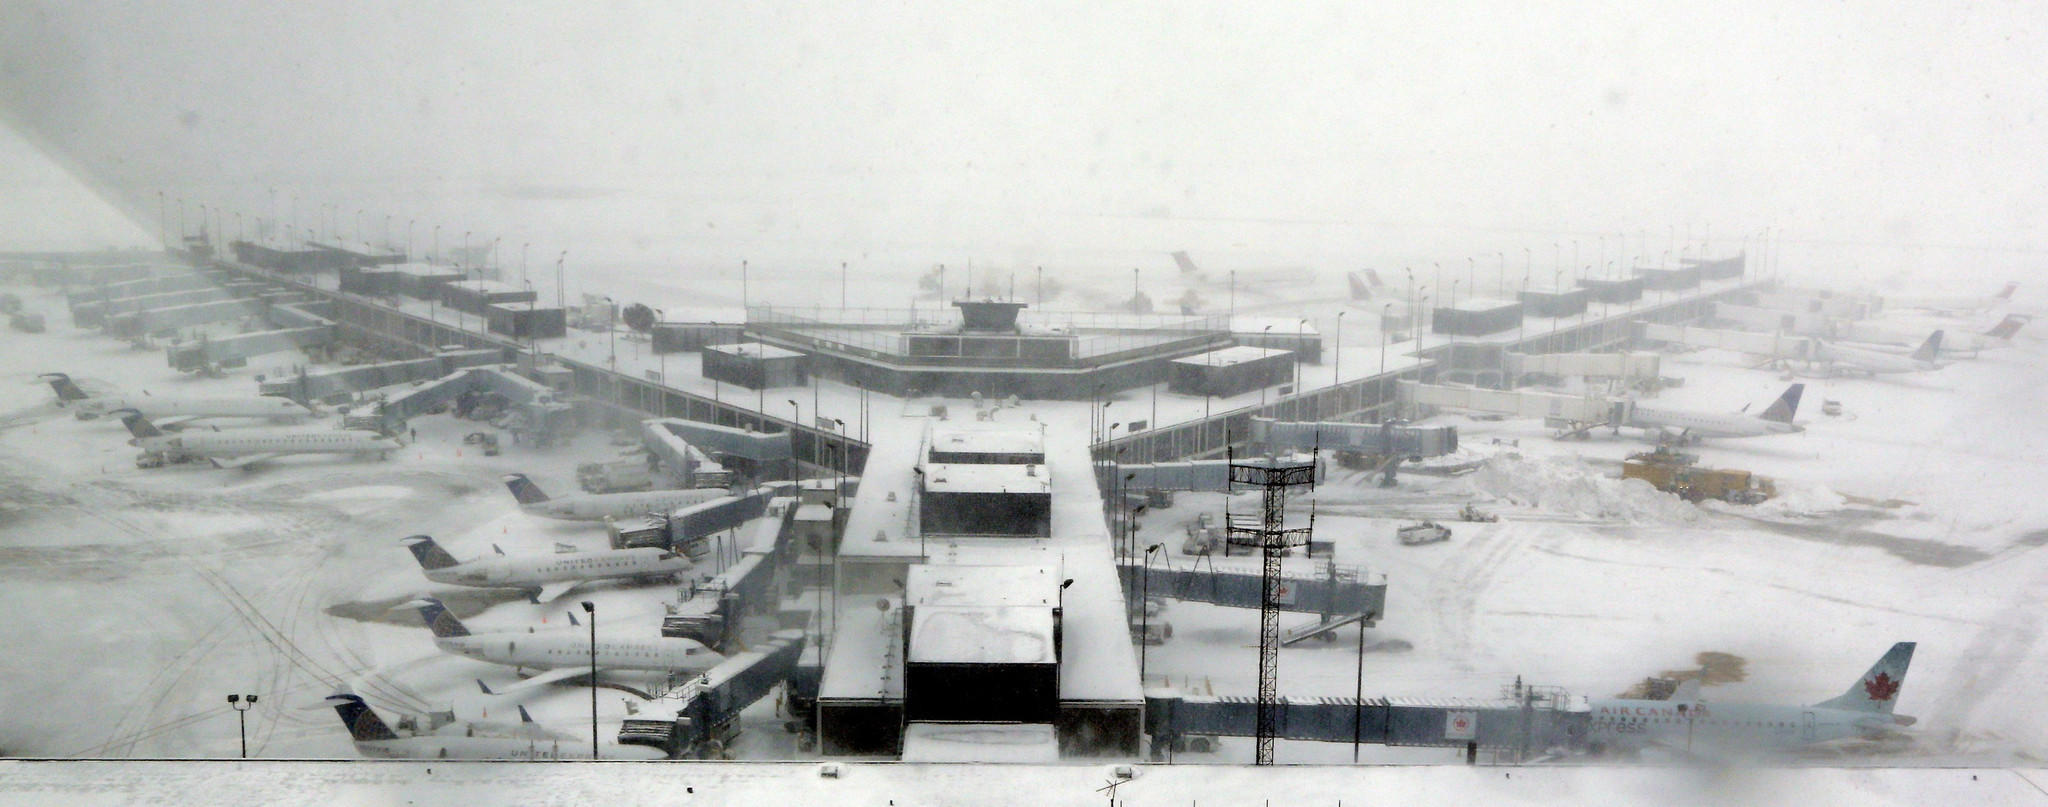 Resultado de imagen para Chicago airport snow